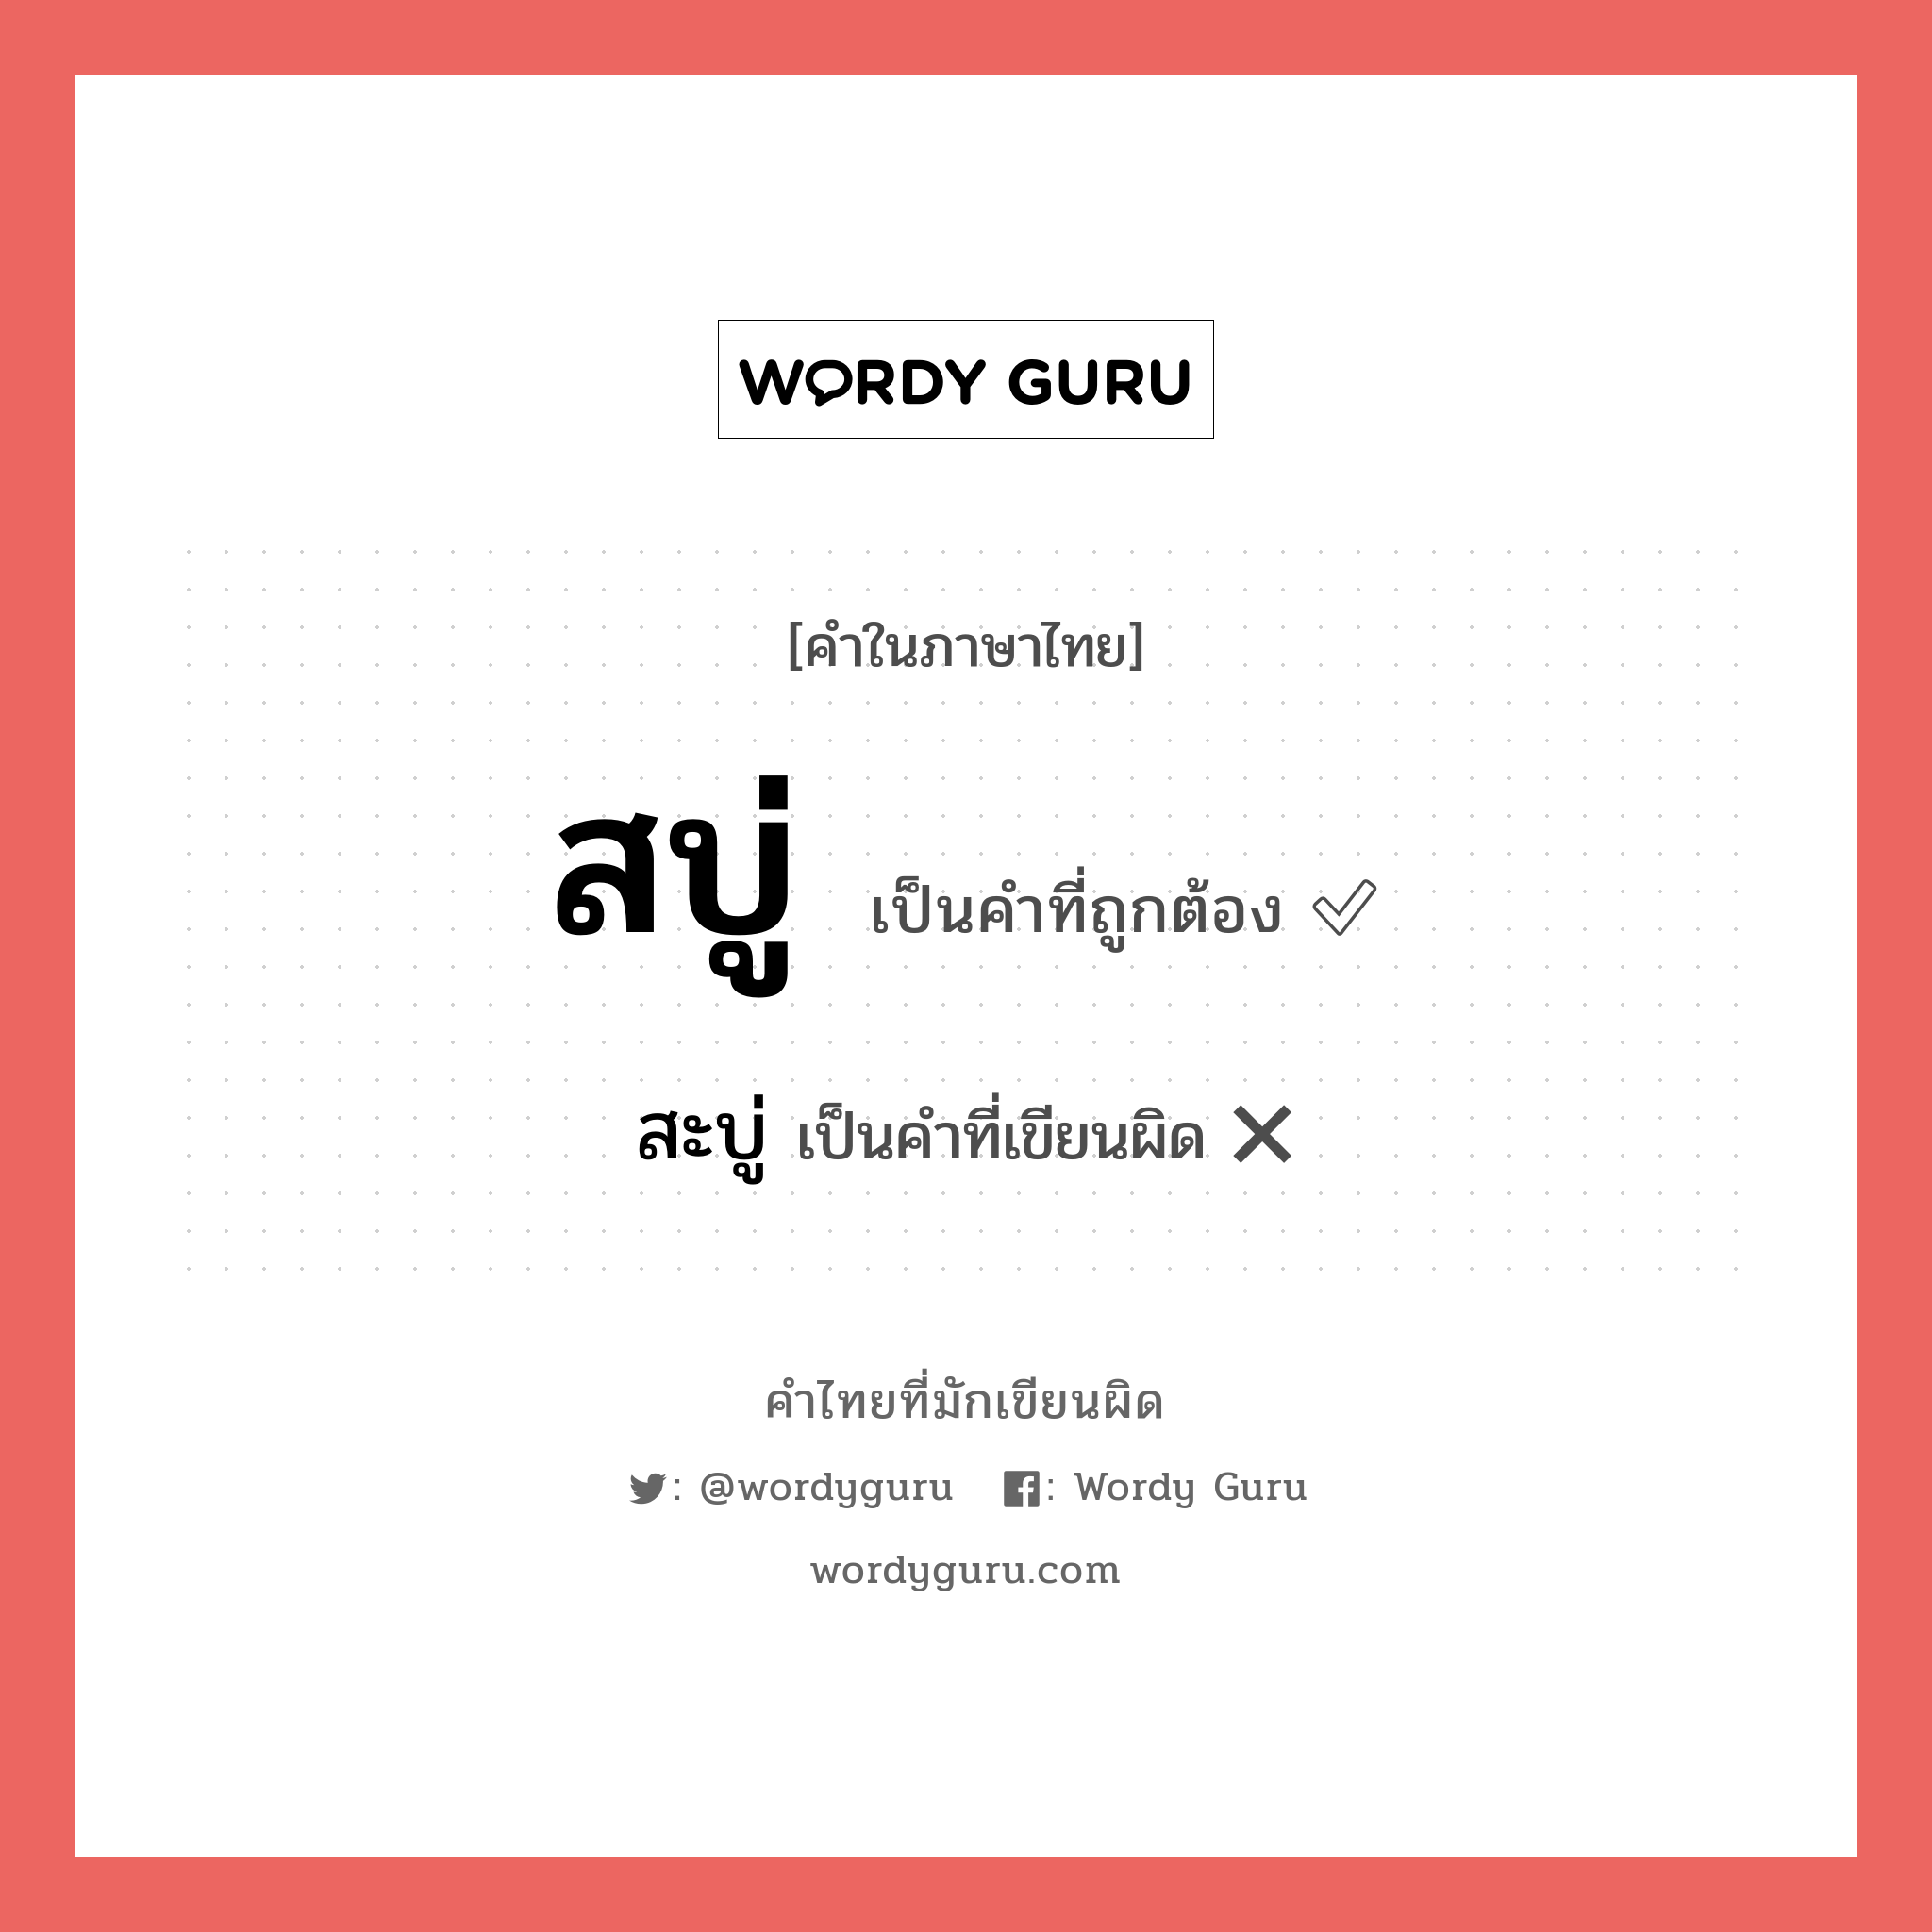 สะบู่ หรือ สบู่ คำไหนเขียนถูก?, คำในภาษาไทยที่มักเขียนผิด สะบู่ คำที่ผิด ❌ สบู่